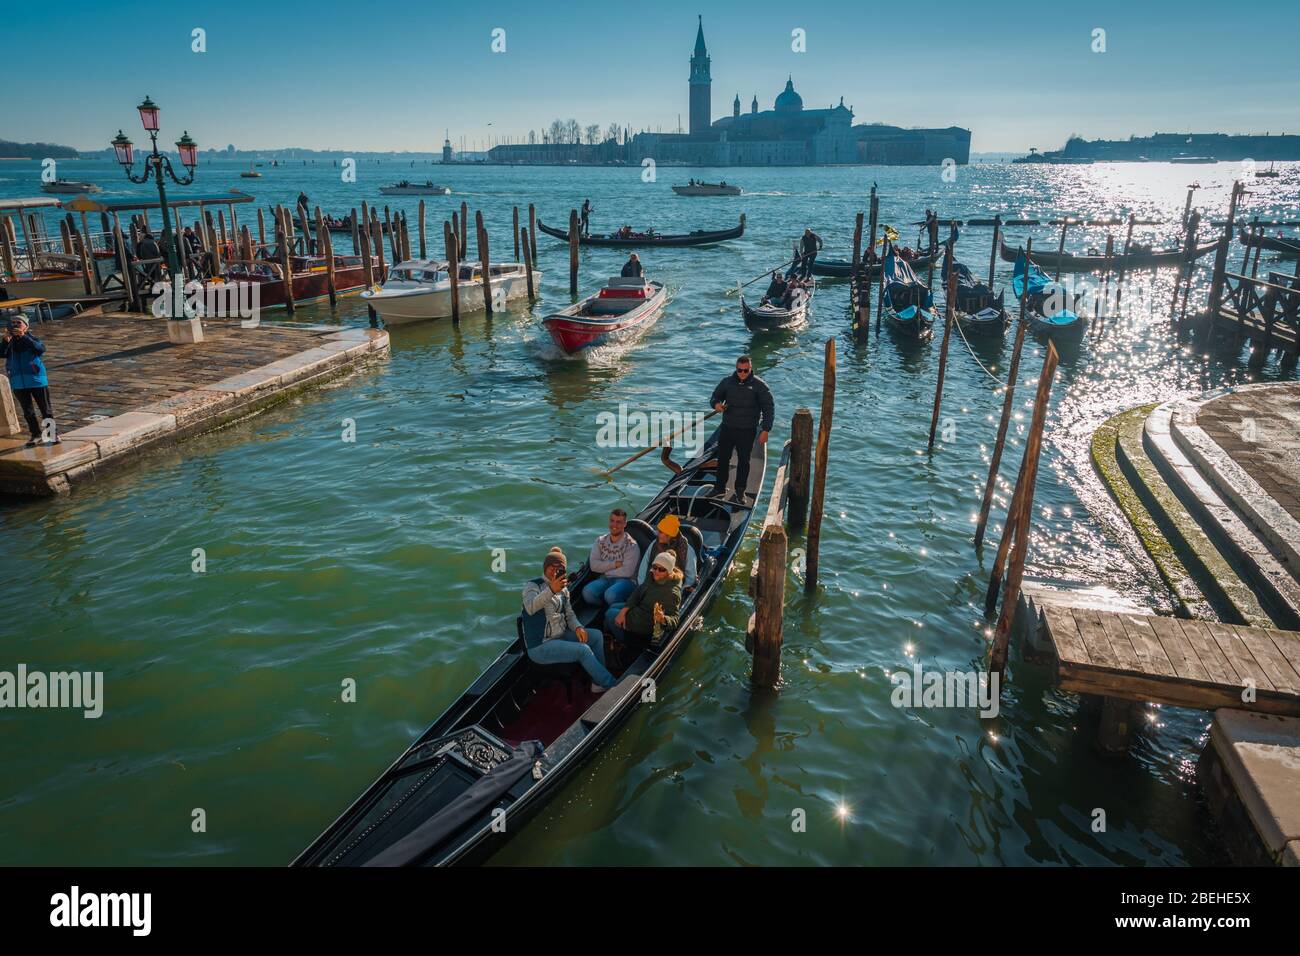 VENEDIG, VENETIEN / ITALIEN - DEZEMBER 26 2019: Blick auf die Kanäle Venedigs vor der COVID-19-Epidemie Stockfoto